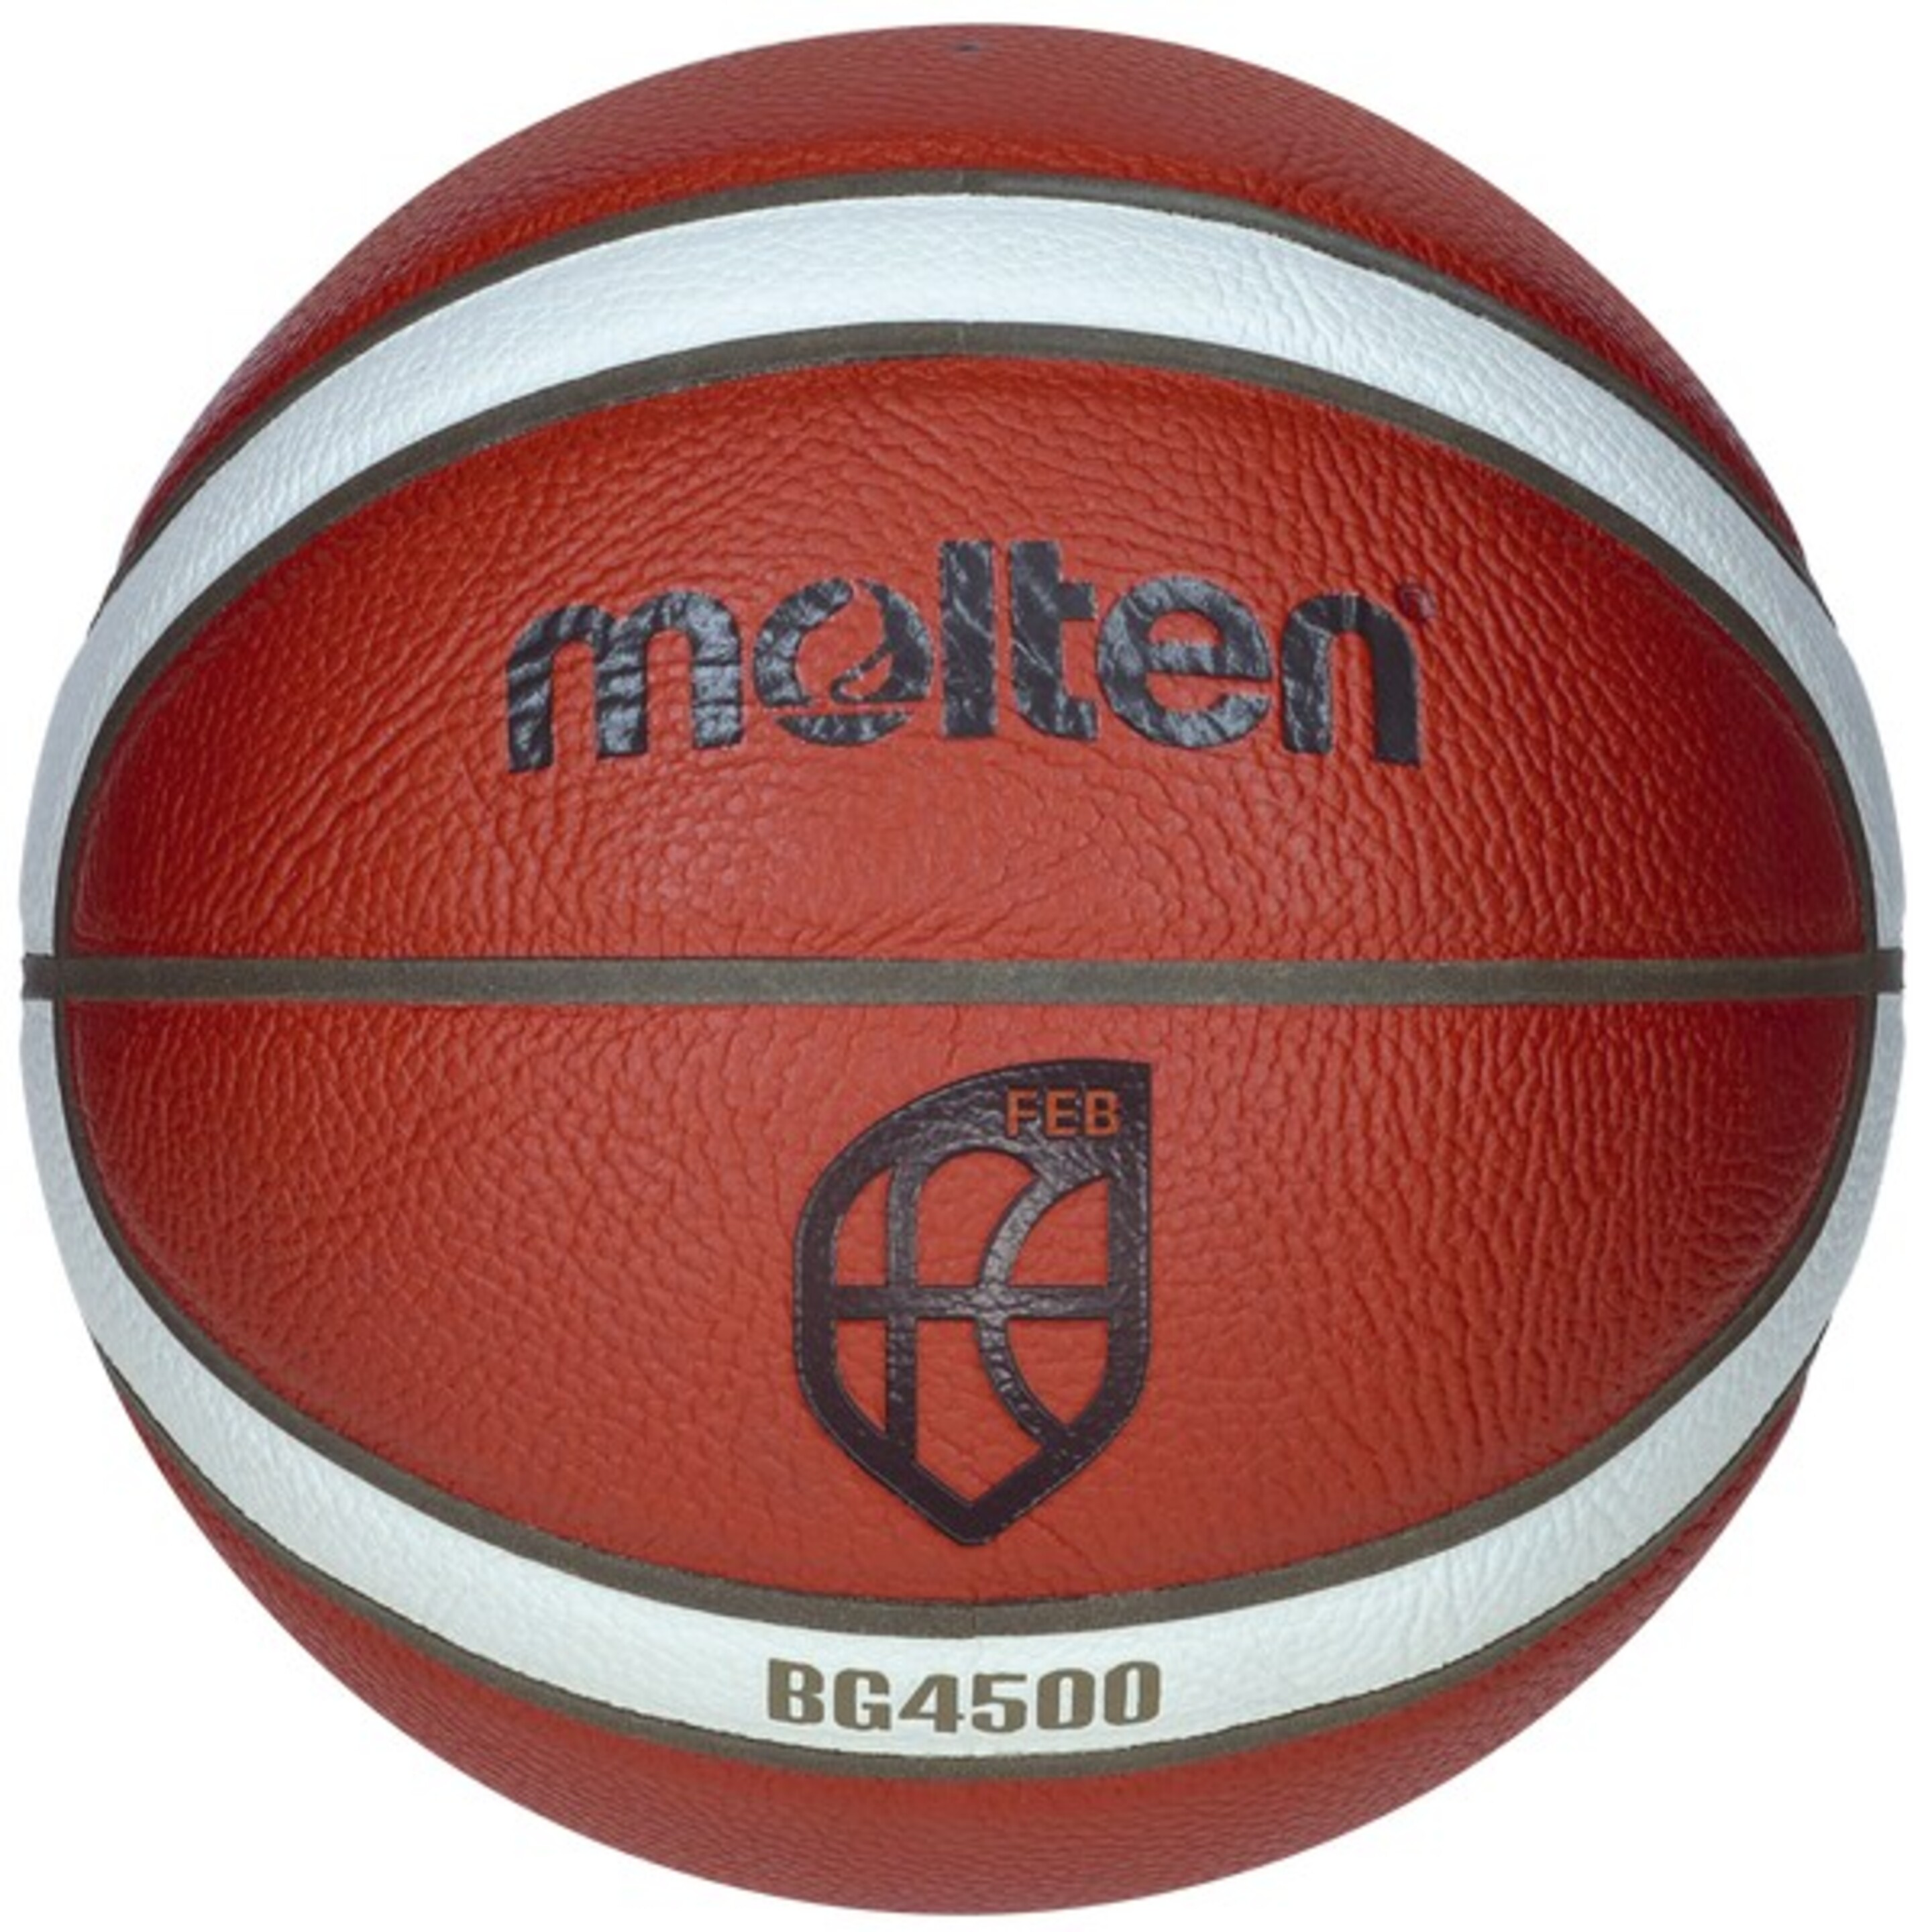 Balón De Baloncesto Molten B7g4500 Cuero Sintético - Naranja  MKP